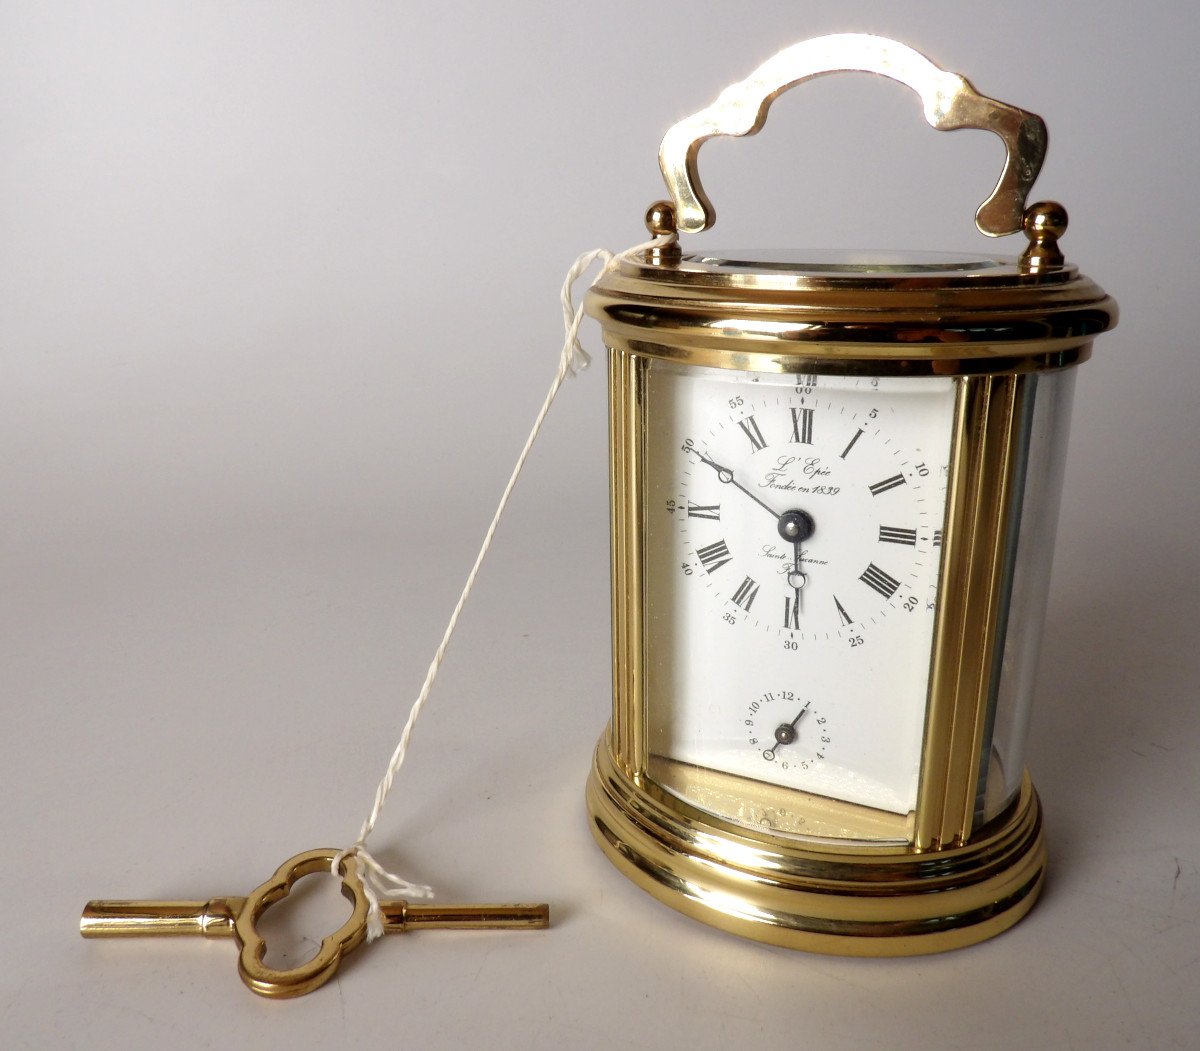 Officer's Clock "l'ovale" Mark l'Epée (sainte-suzanne / France)